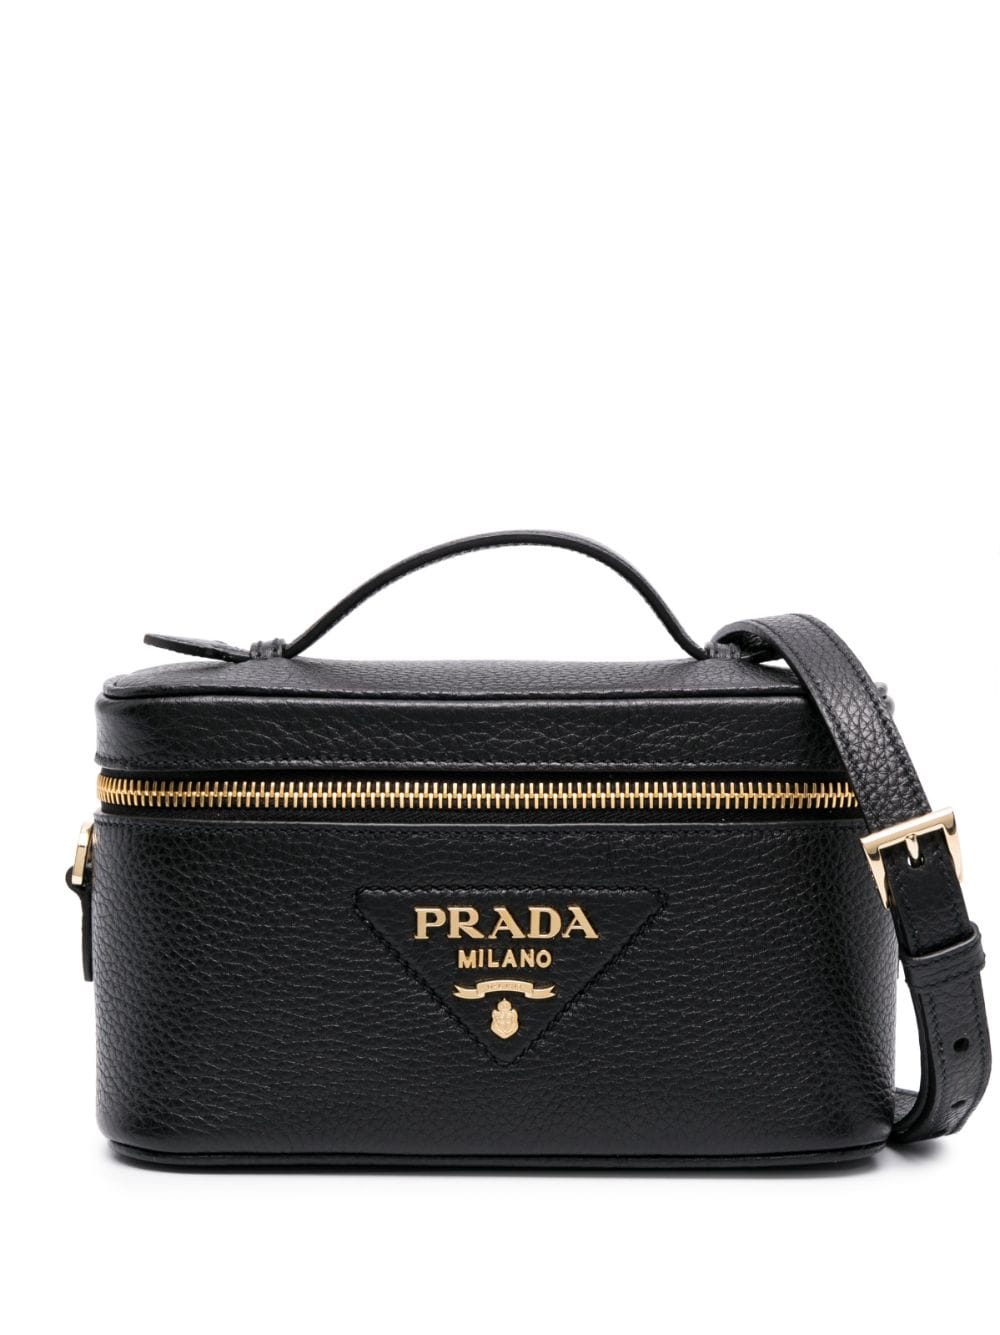 Prada logo-plaque leather mini bag - Black von Prada